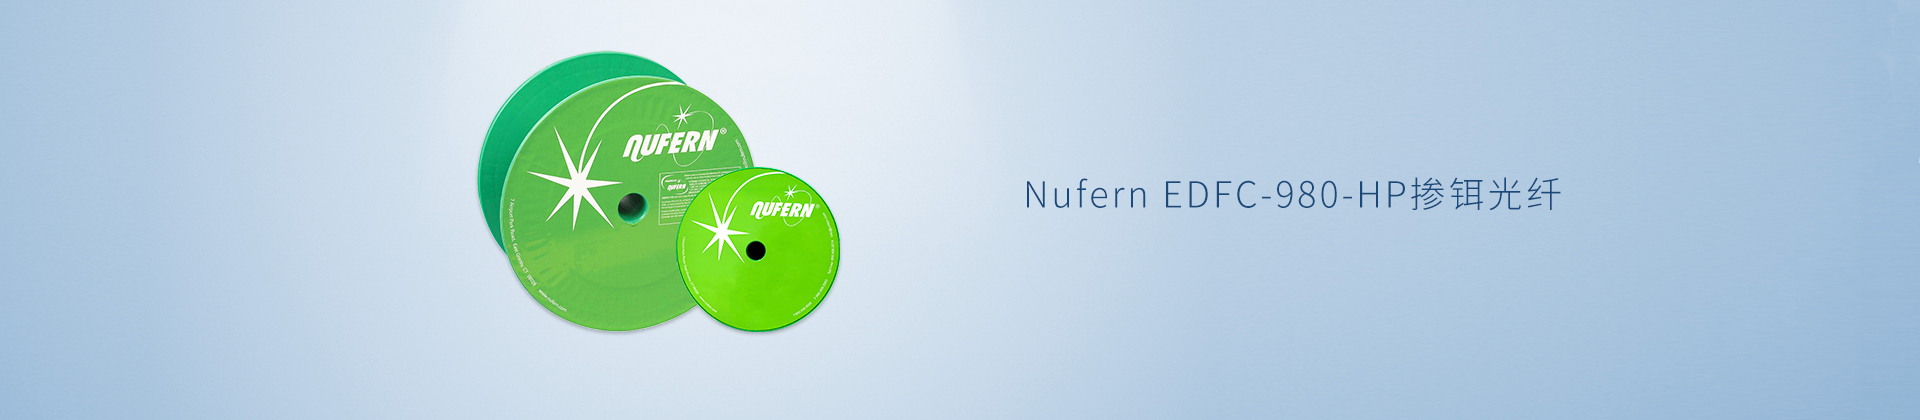 Nufern EDFC-980-HP掺铒光纤